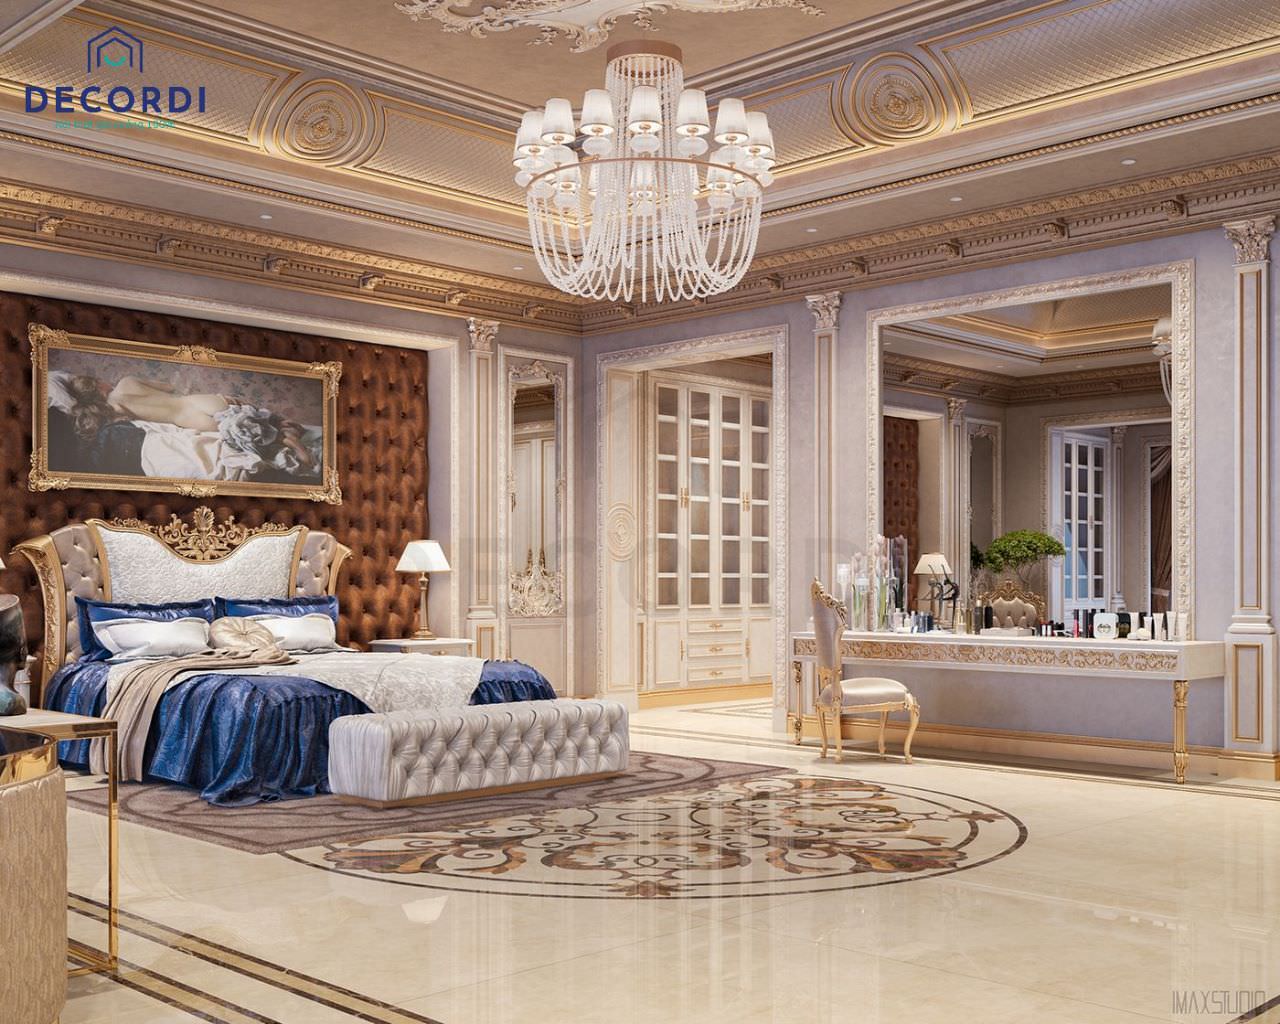 Thiết kế nội thất phòng ngủ biệt thự cổ điển với tông màu kem hoà cùng các chi tiết tinh xảo tạo điểm nhấn ấn tượng